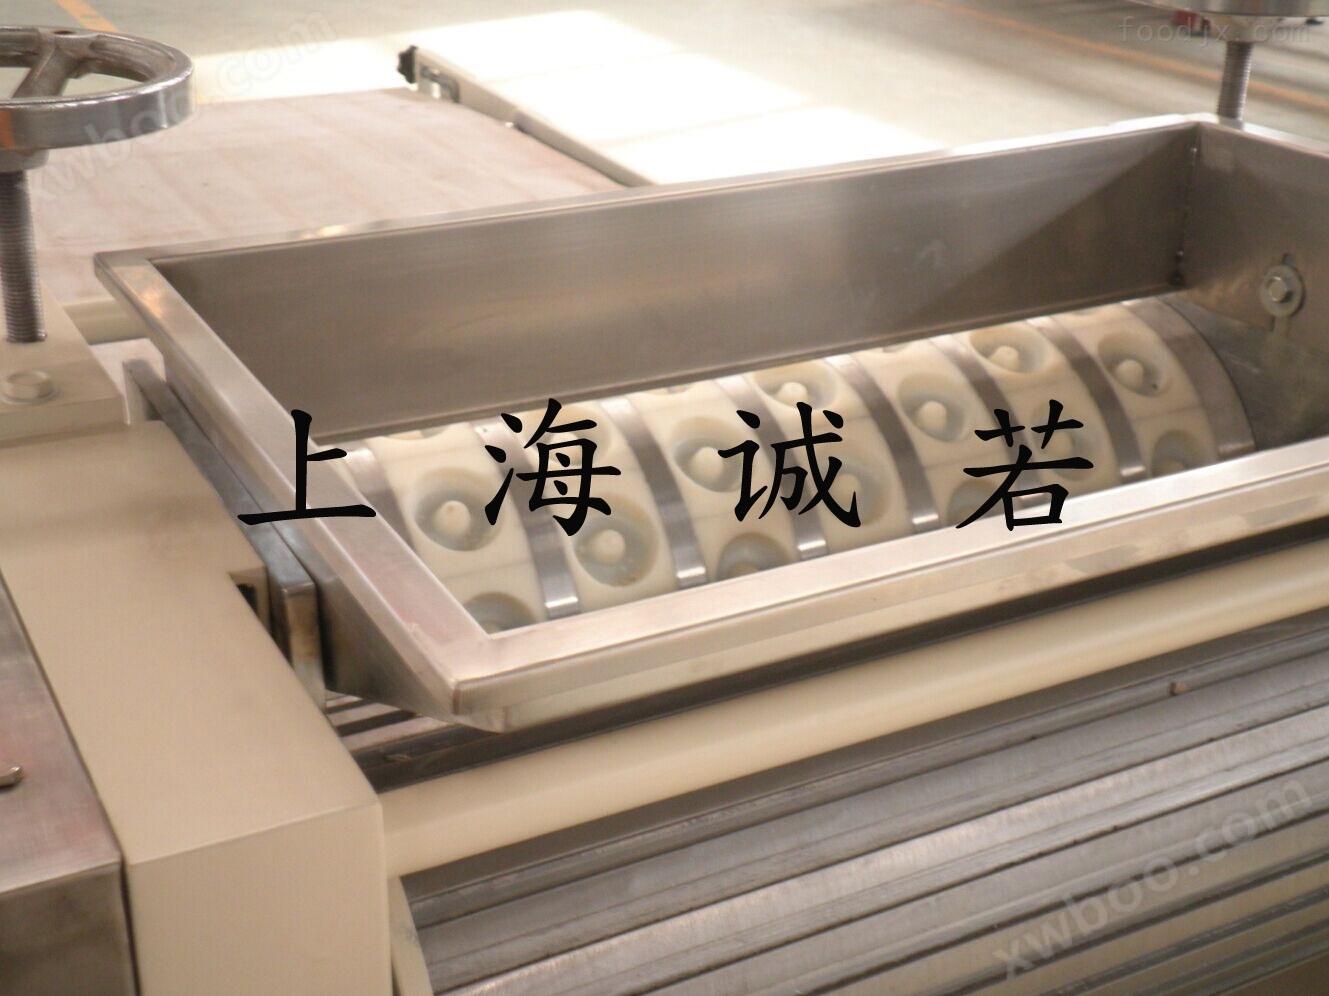 上海桃酥饼干机生产厂家 上海桃酥机 上海桃酥饼干机 上海桃酥饼干成型机